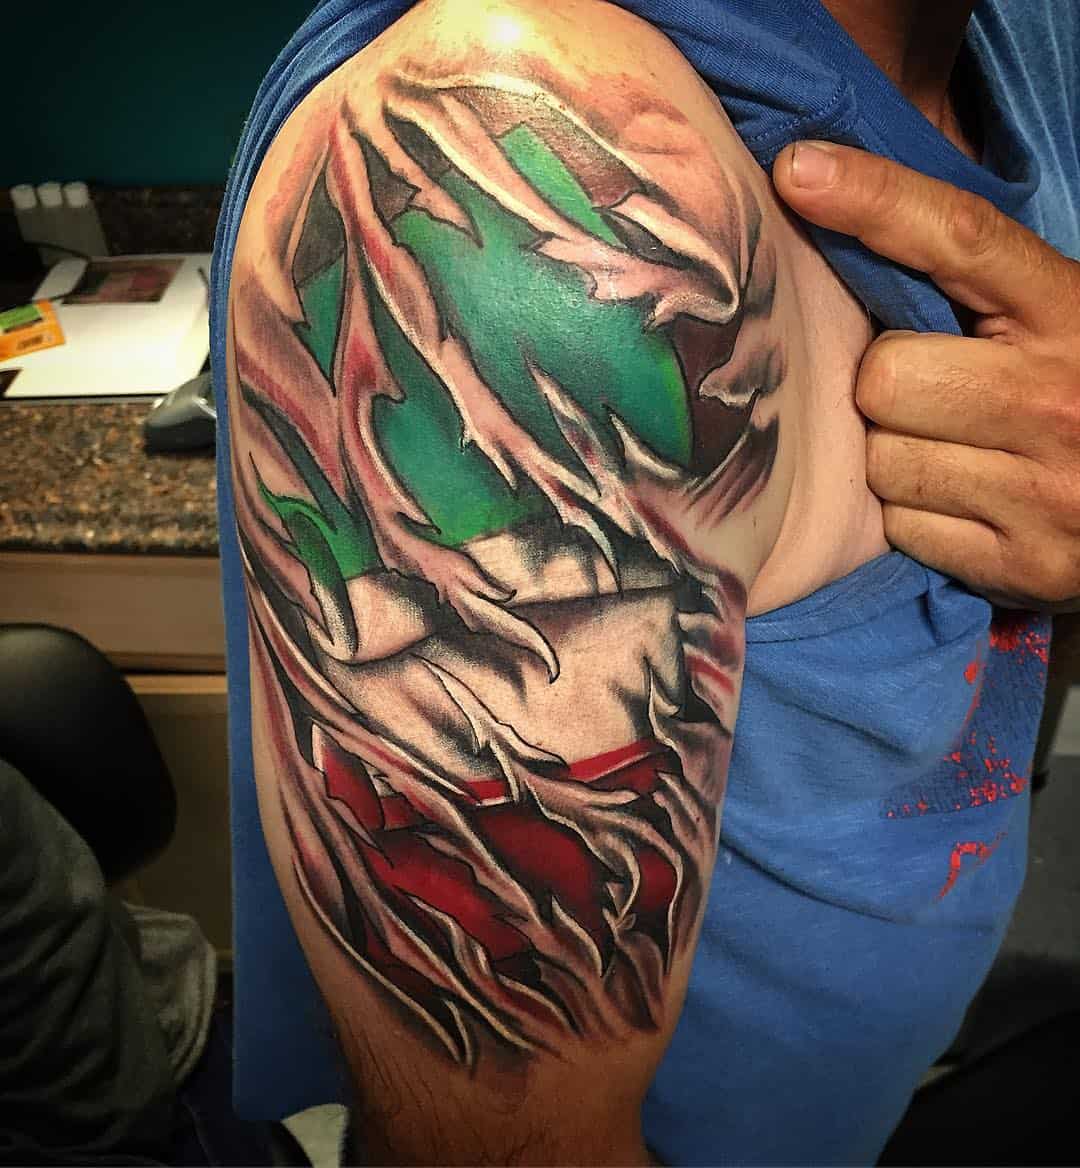 Tatuaggio bandiera italiana by @joe a tattoo